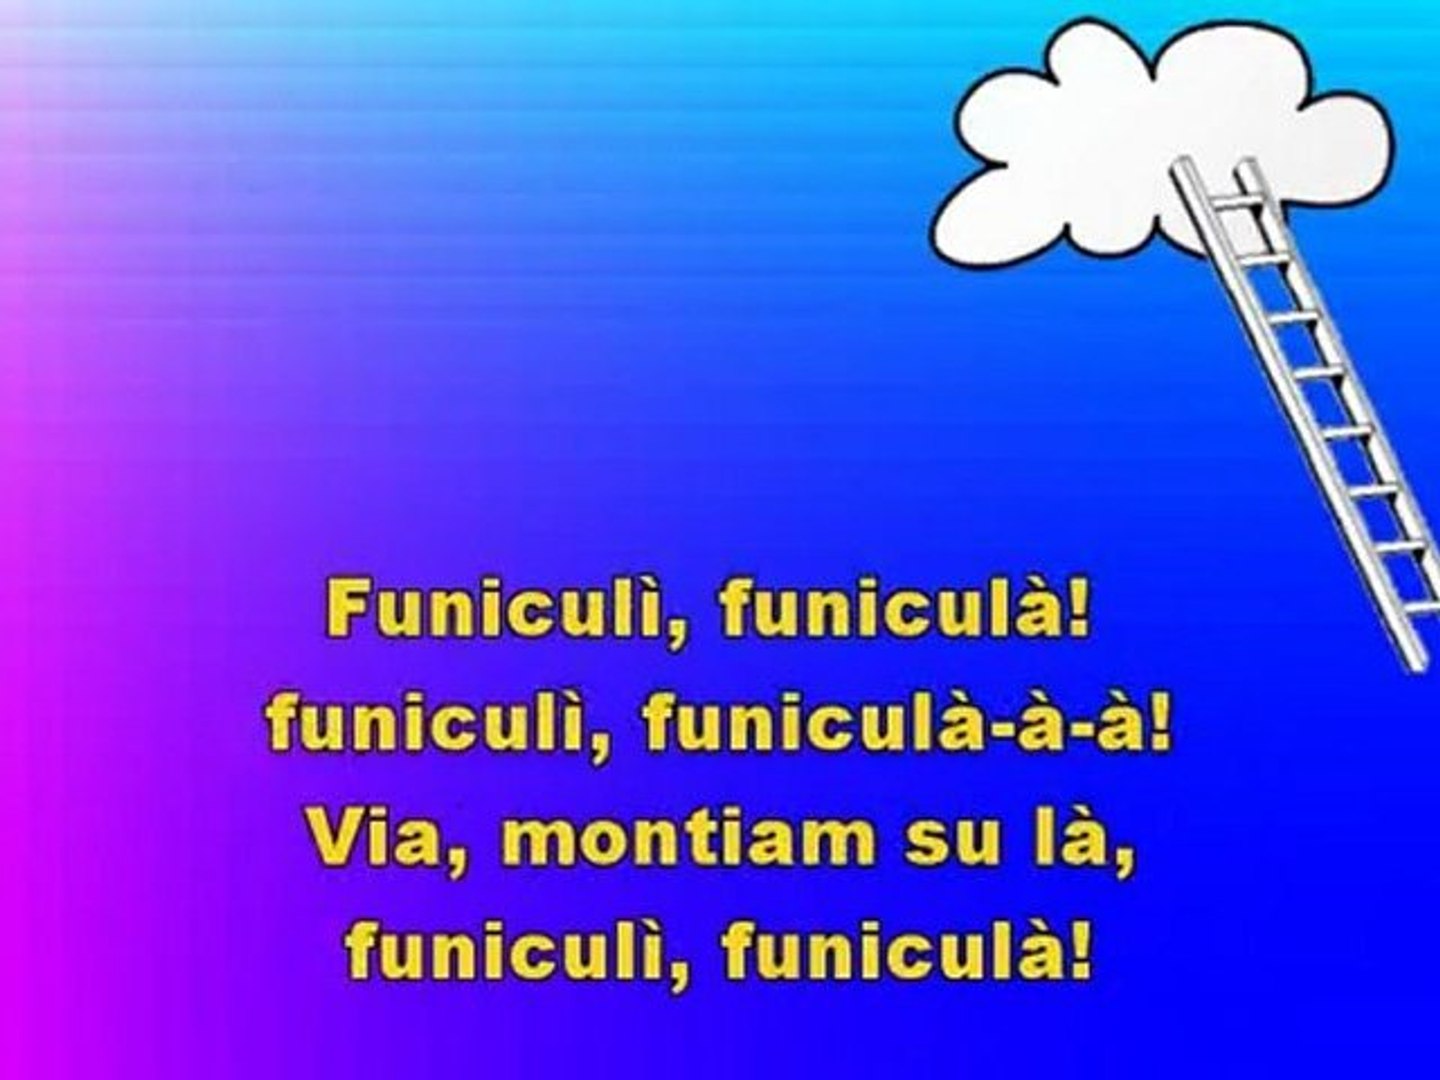 FUNICULI FUNICULA - Karaoke in Italiano - video Dailymotion